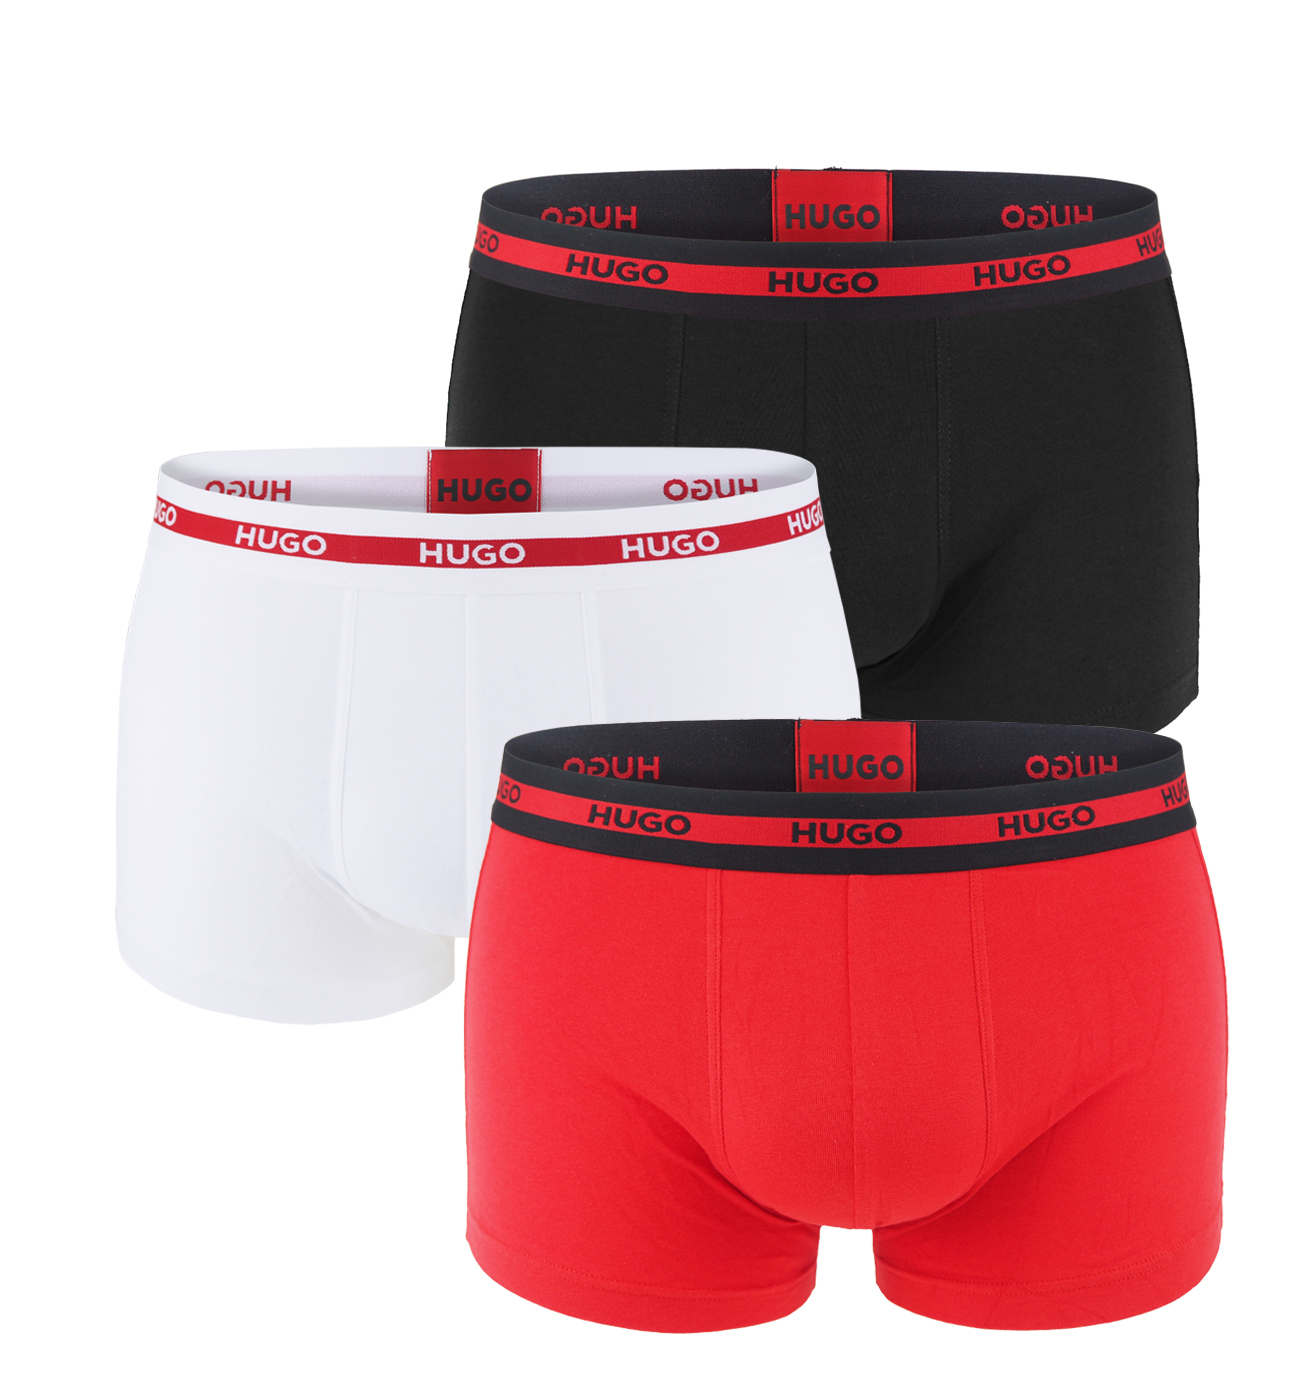 HUGO - boxerky 3PACK cotton stretch red & black color combo z organickej bavlny - limitovaná fashion edícia (HUGO BOSS)-M (83-89 cm)